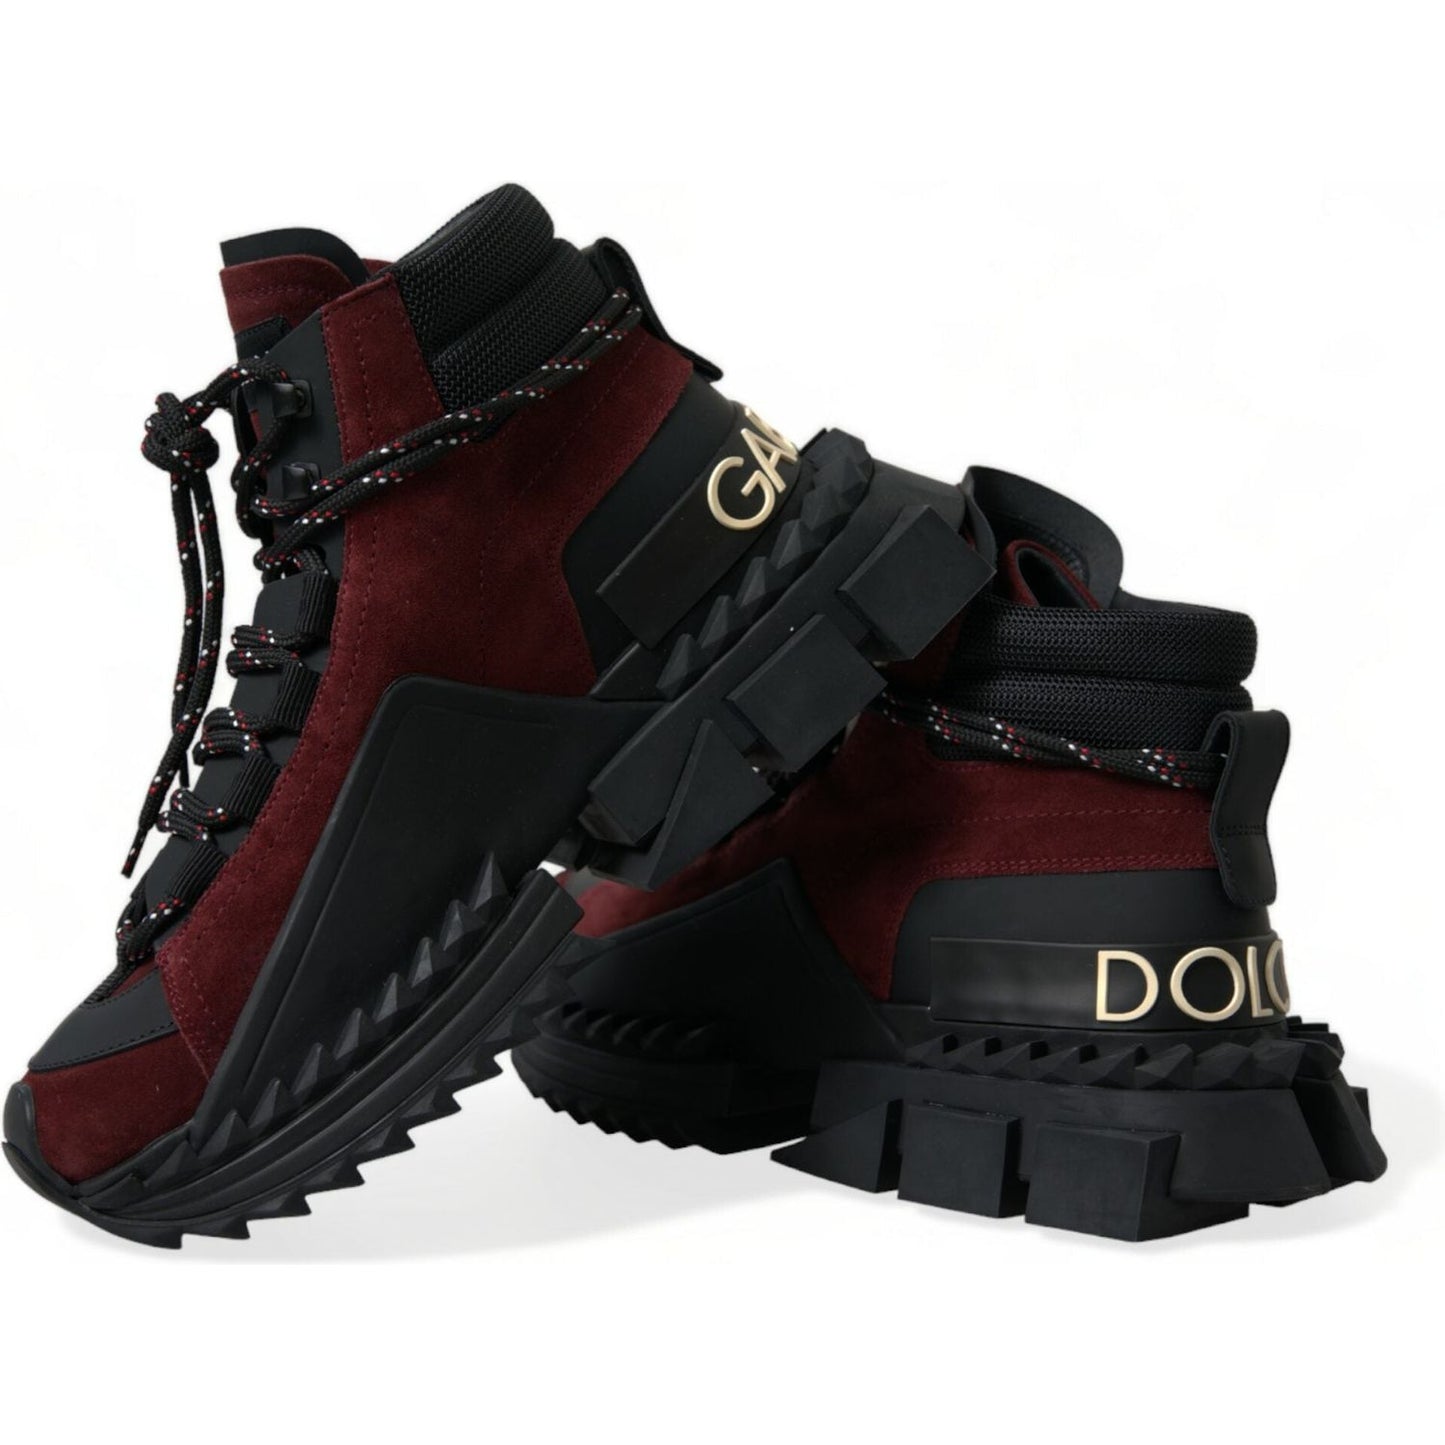 Dolce & Gabbana Burgundy Leather High Top Sneakers burgundy-super-king-high-top-men-sneakers-shoes